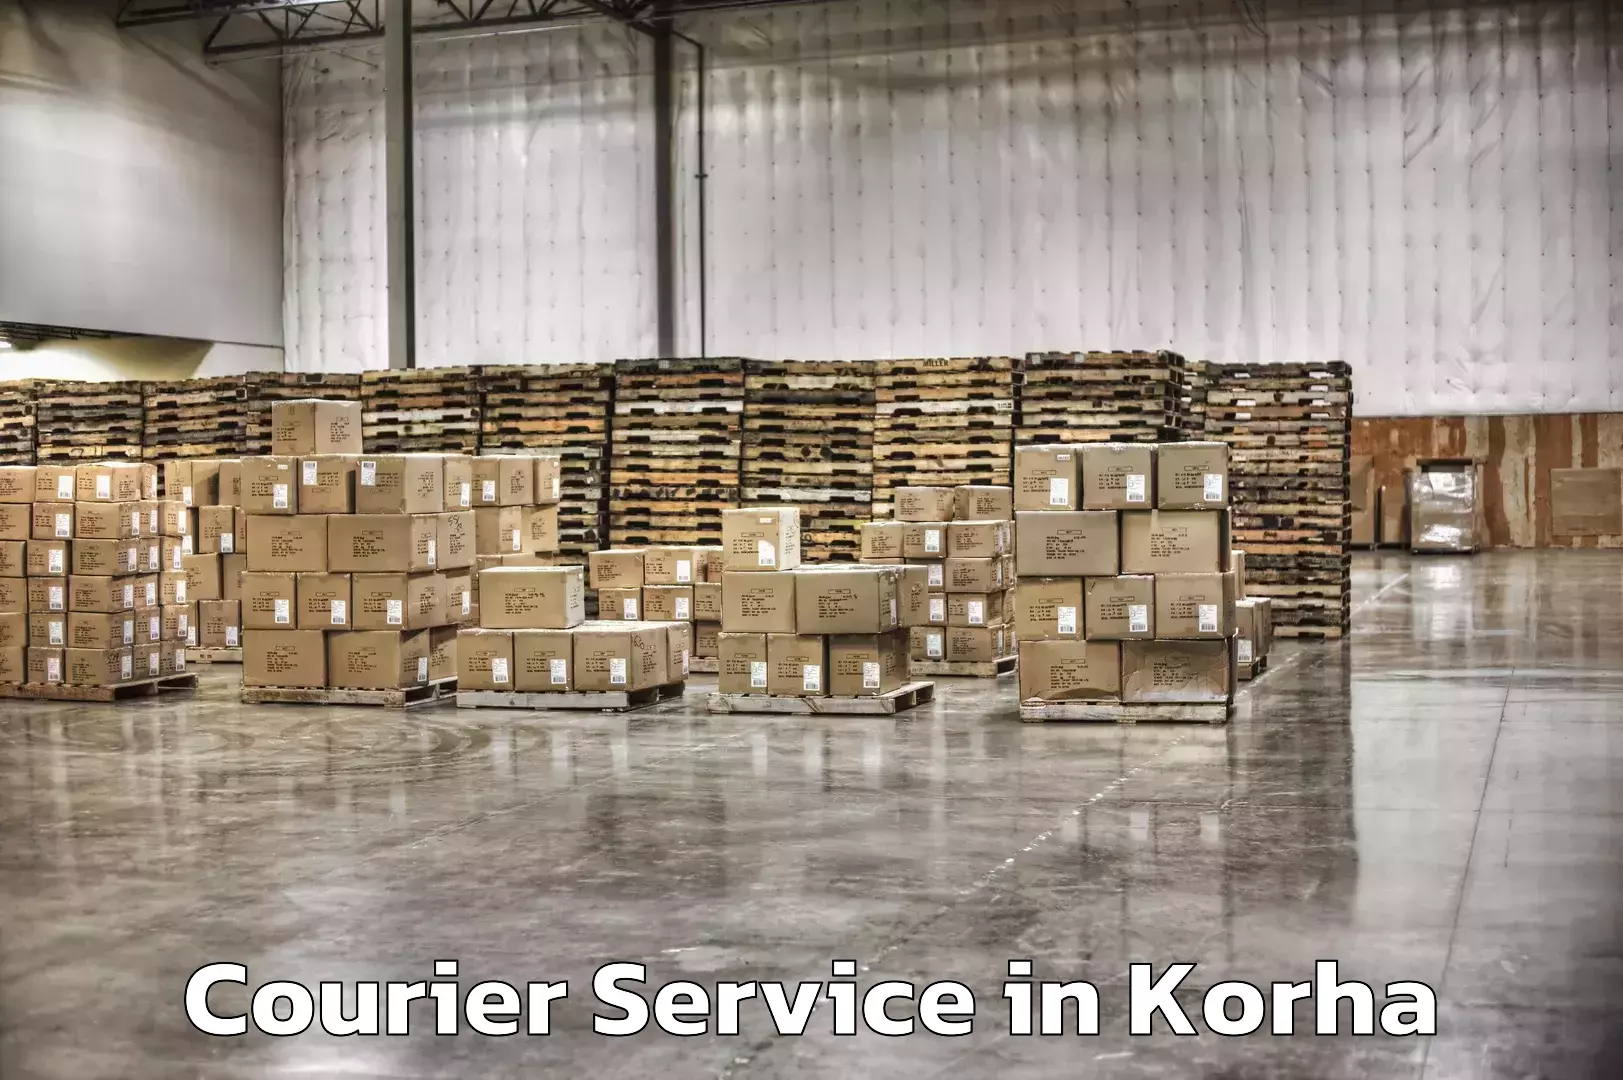 Customer-centric shipping in Korha